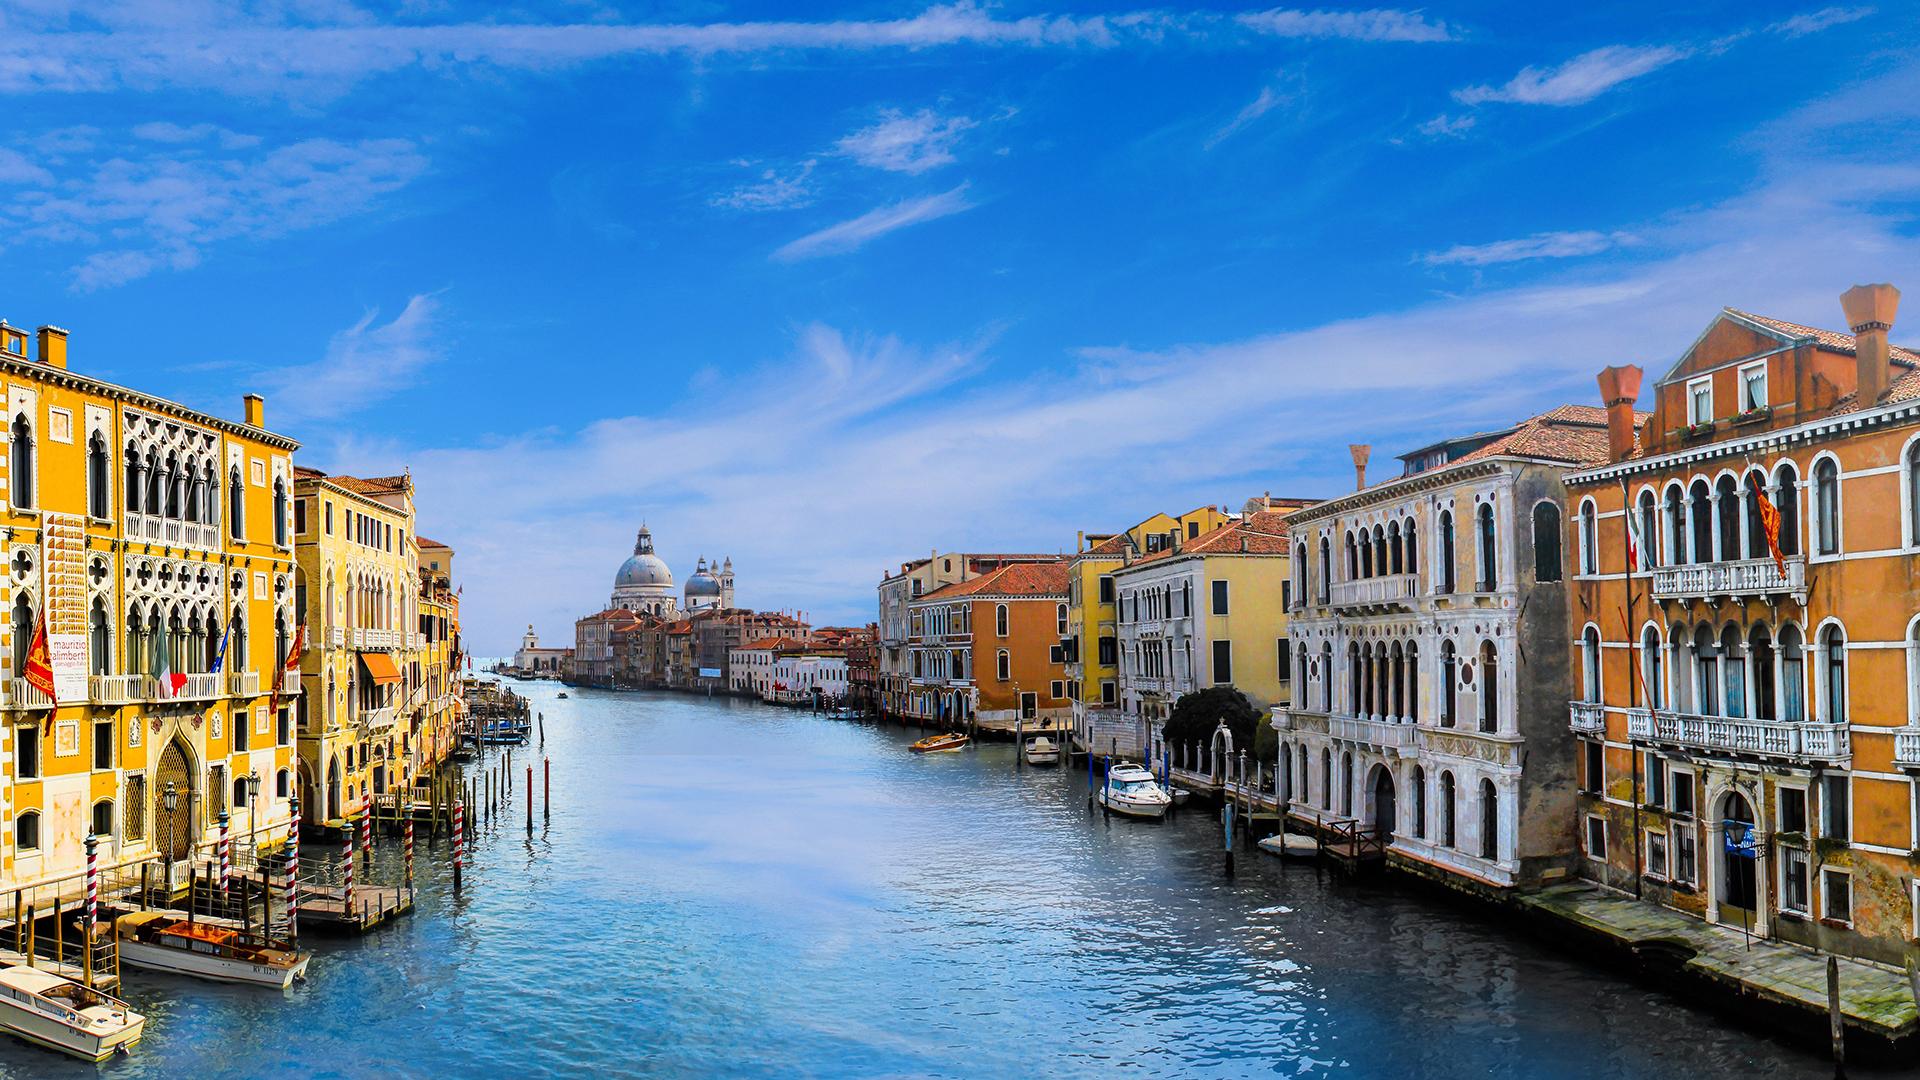 水上城市威尼斯风景图片桌面壁纸